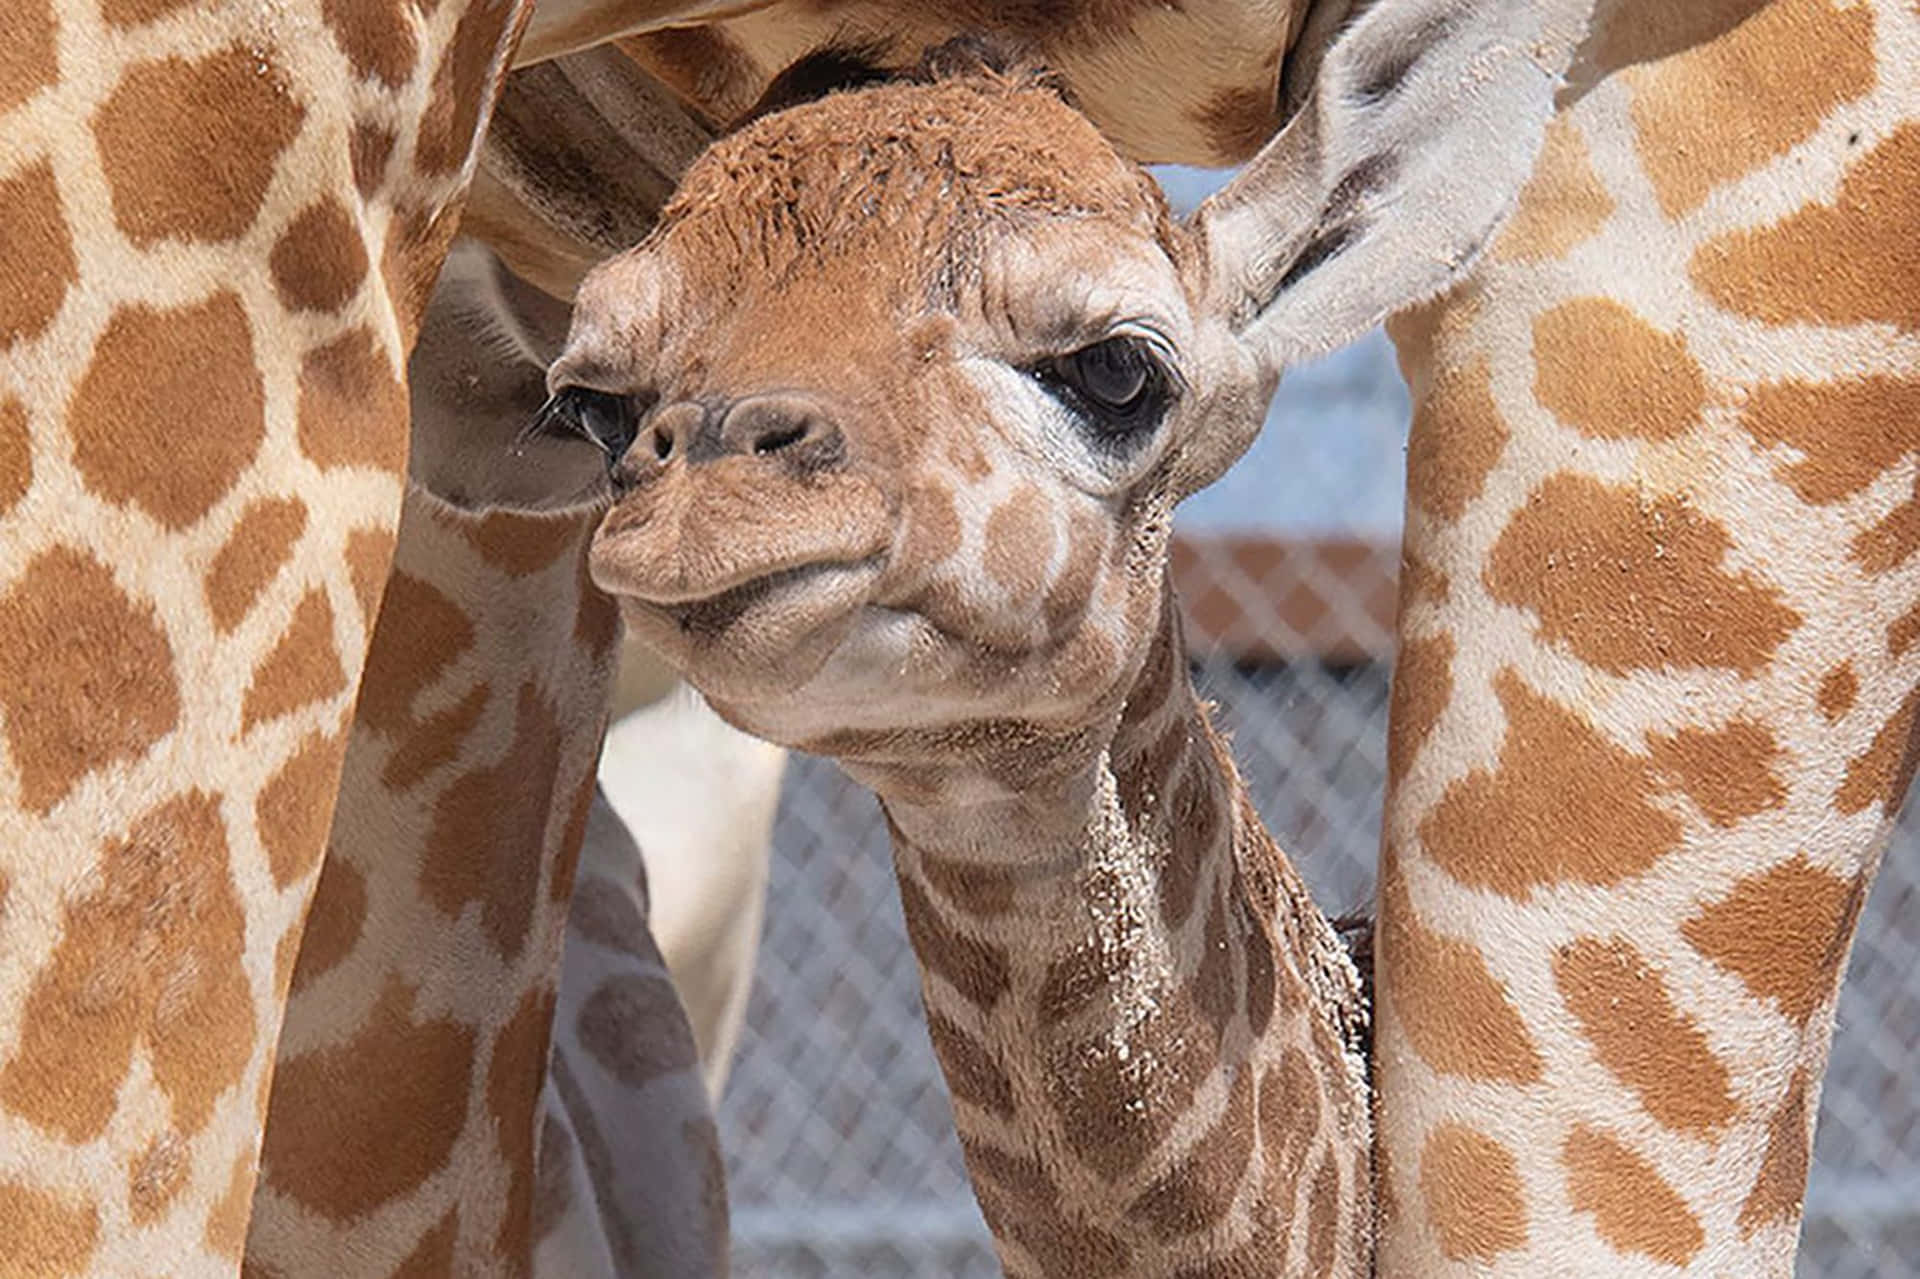 Adorable Baby Giraffe Posing For A Photo